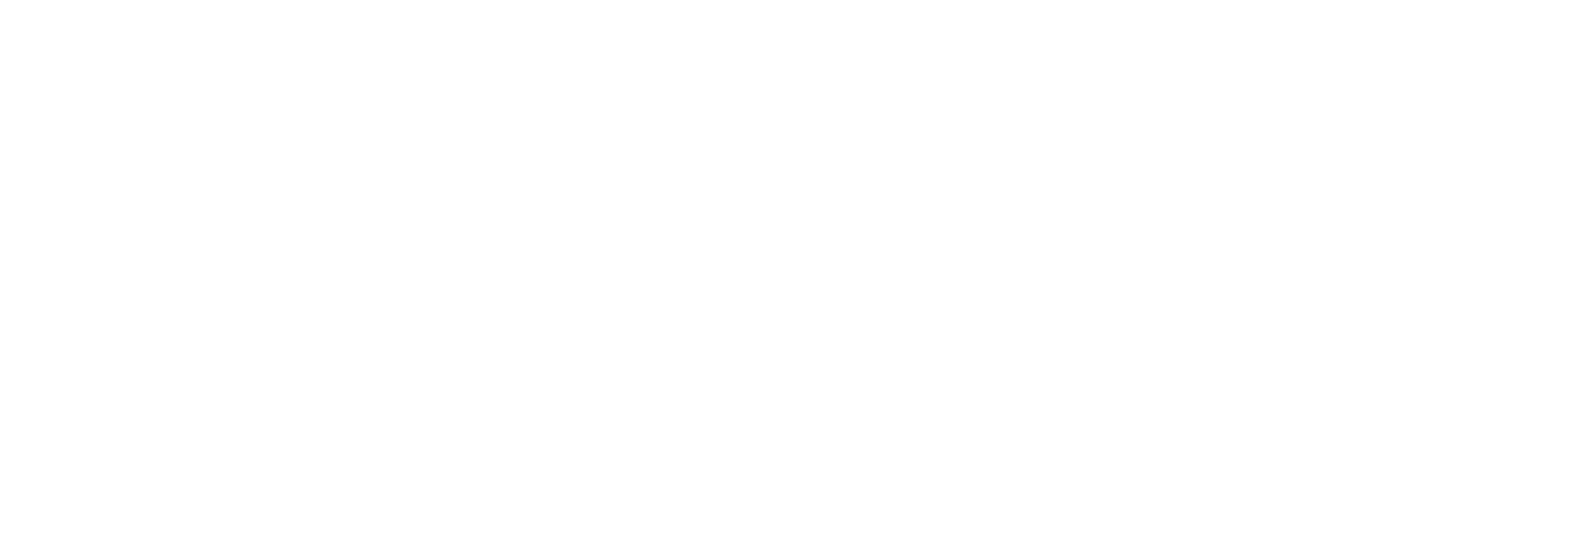 MediciNova logo large for dark backgrounds (transparent PNG)